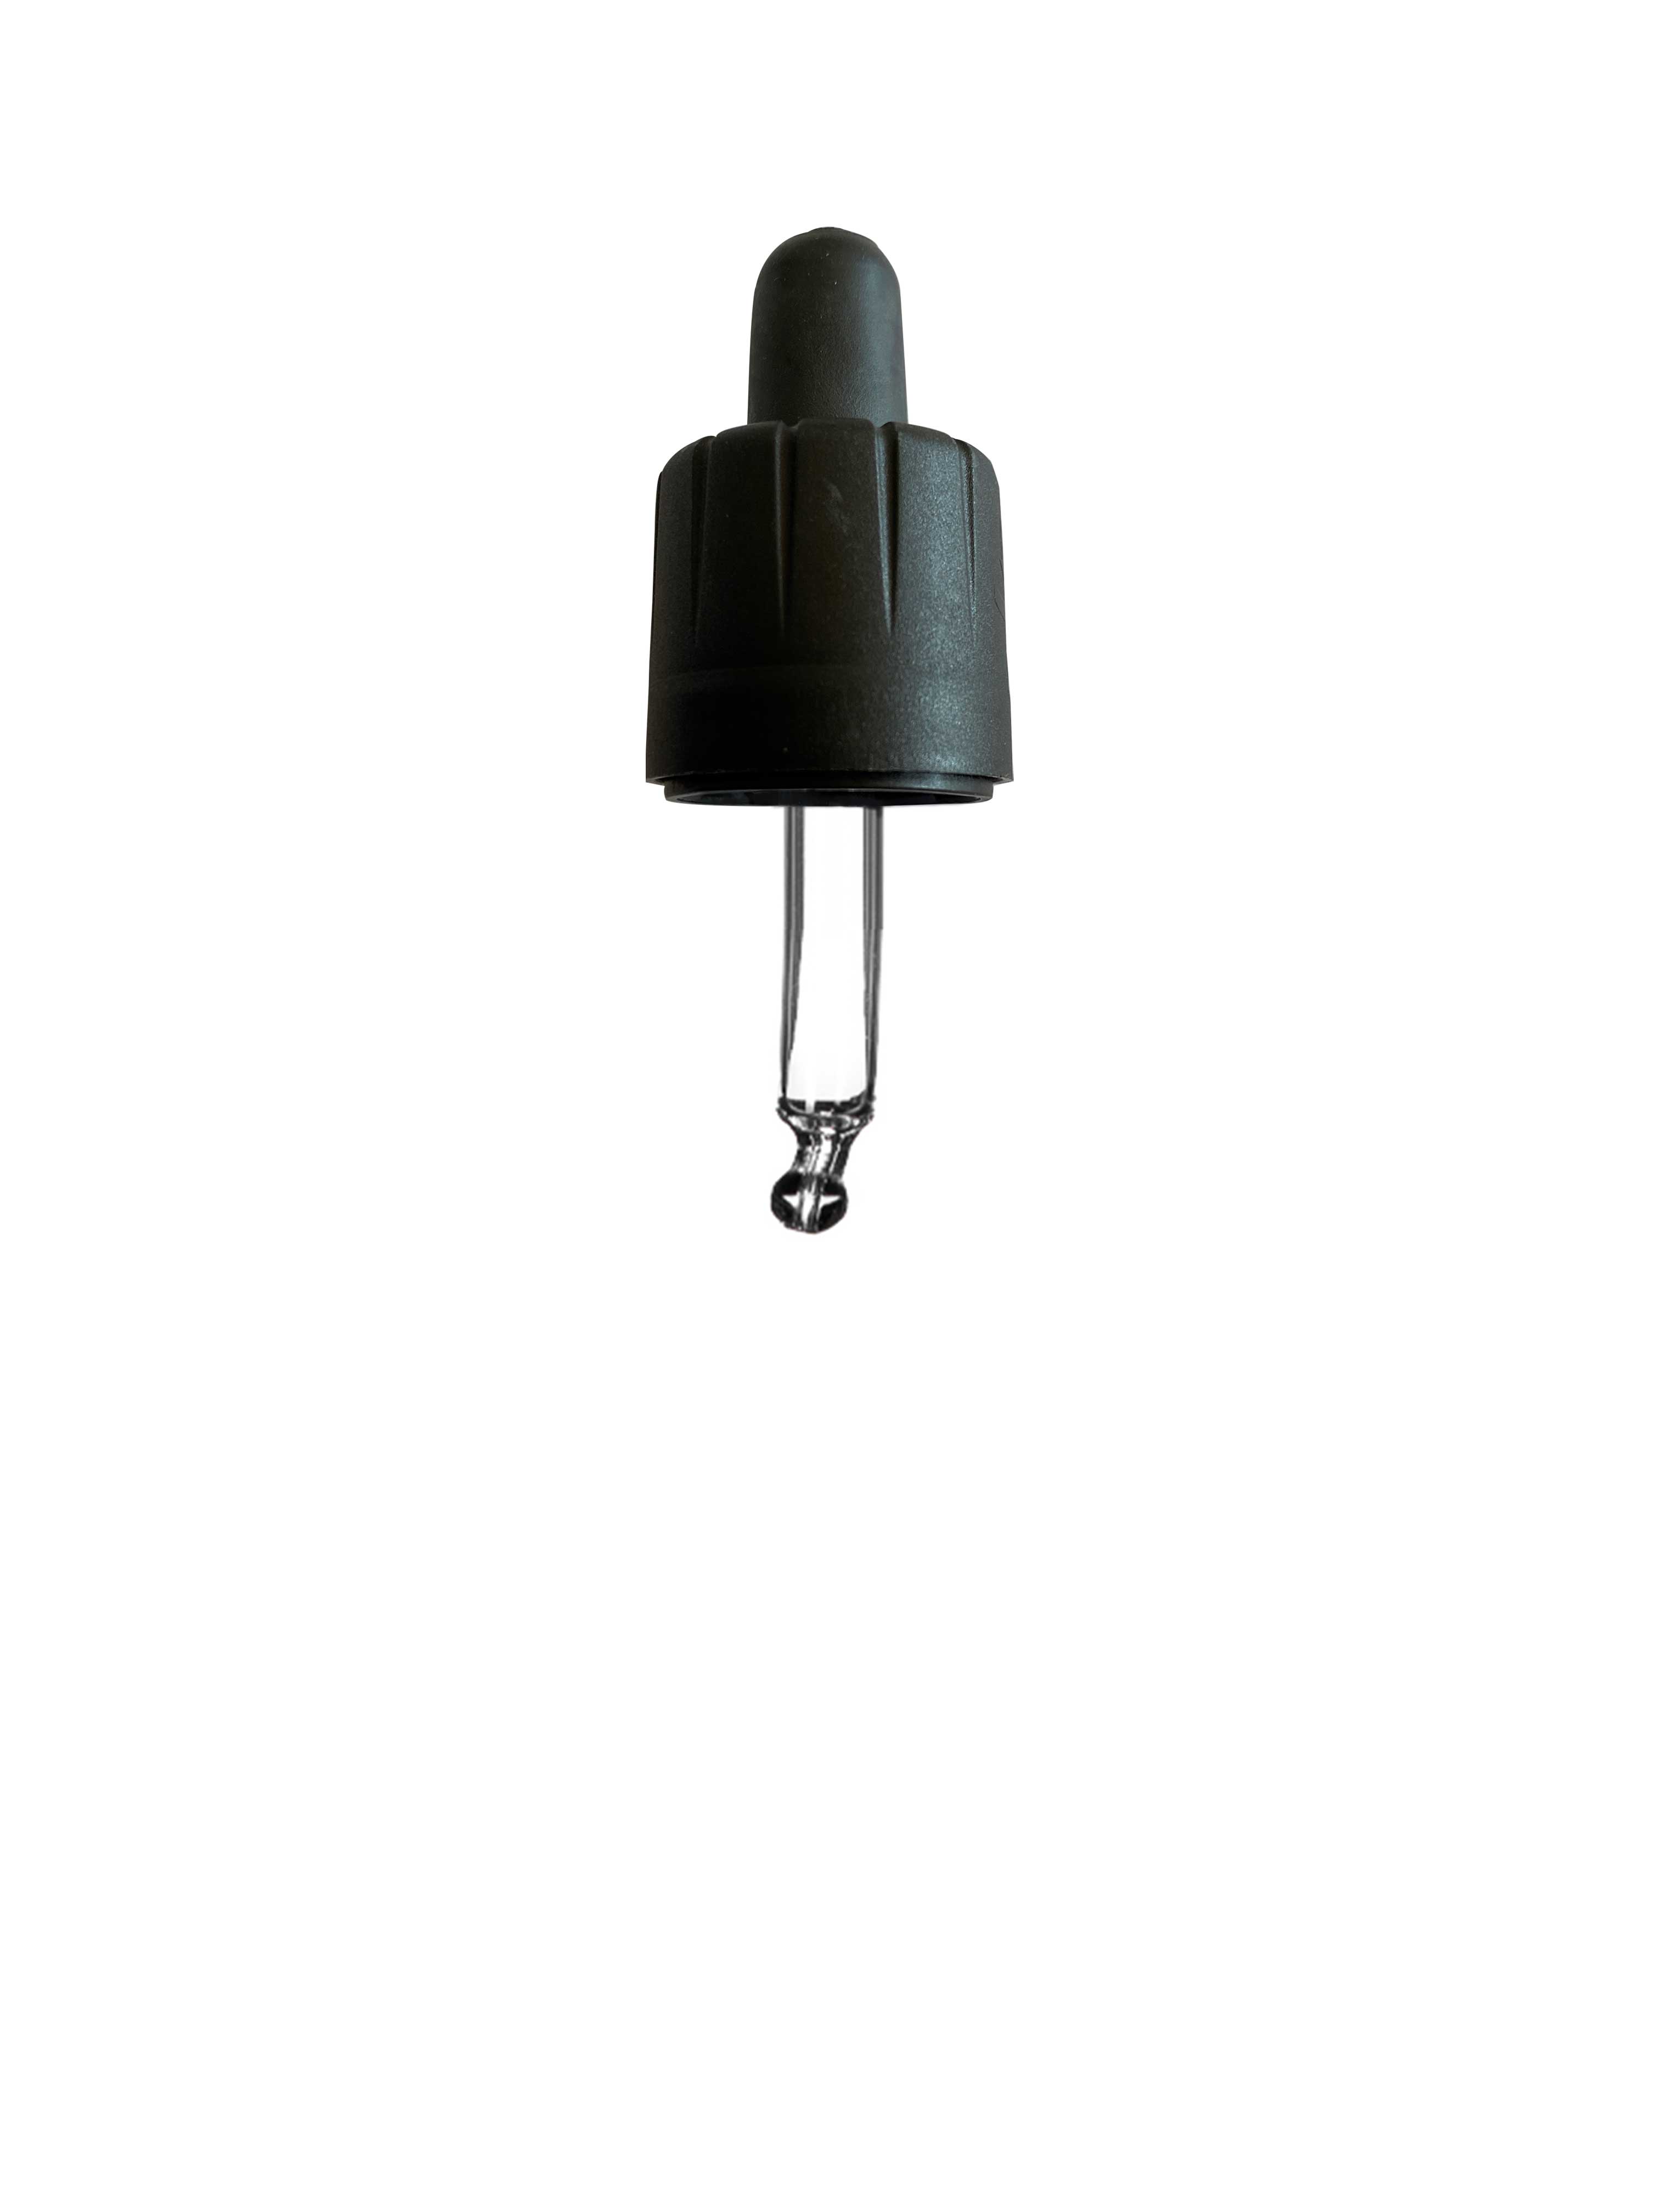 Child-resistant pipette series II, DIN18, tamper-evident, PP/PEHD,black matt, fine ribbed, black bulb TPE 0.7 ml, ball tip, bent (for Orion 5 ml)